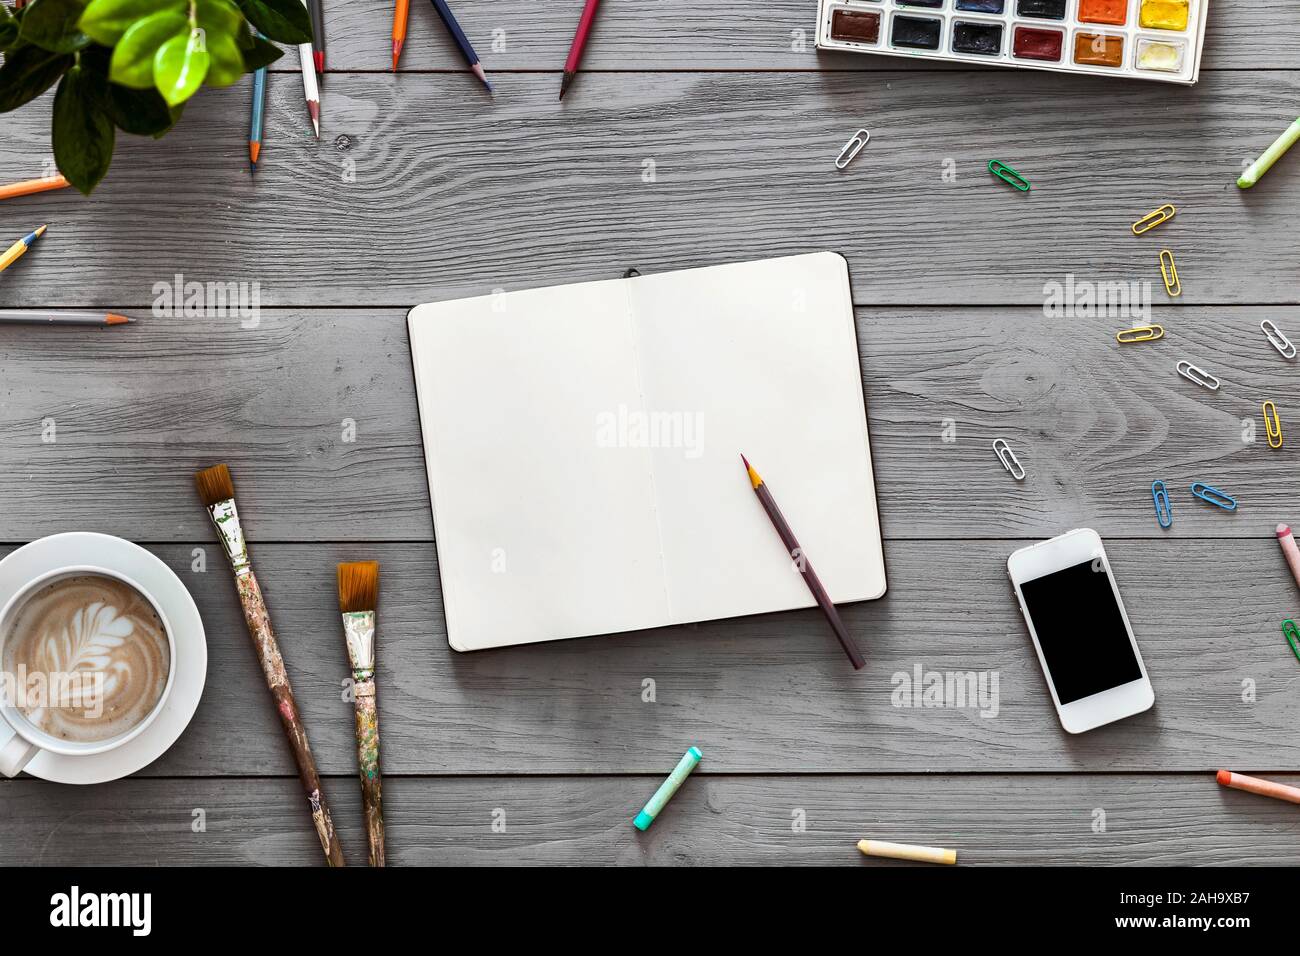 L'art créatif avec table pour ordinateur portable blanc fournitures pour peintures crayon croquis de travail Banque D'Images